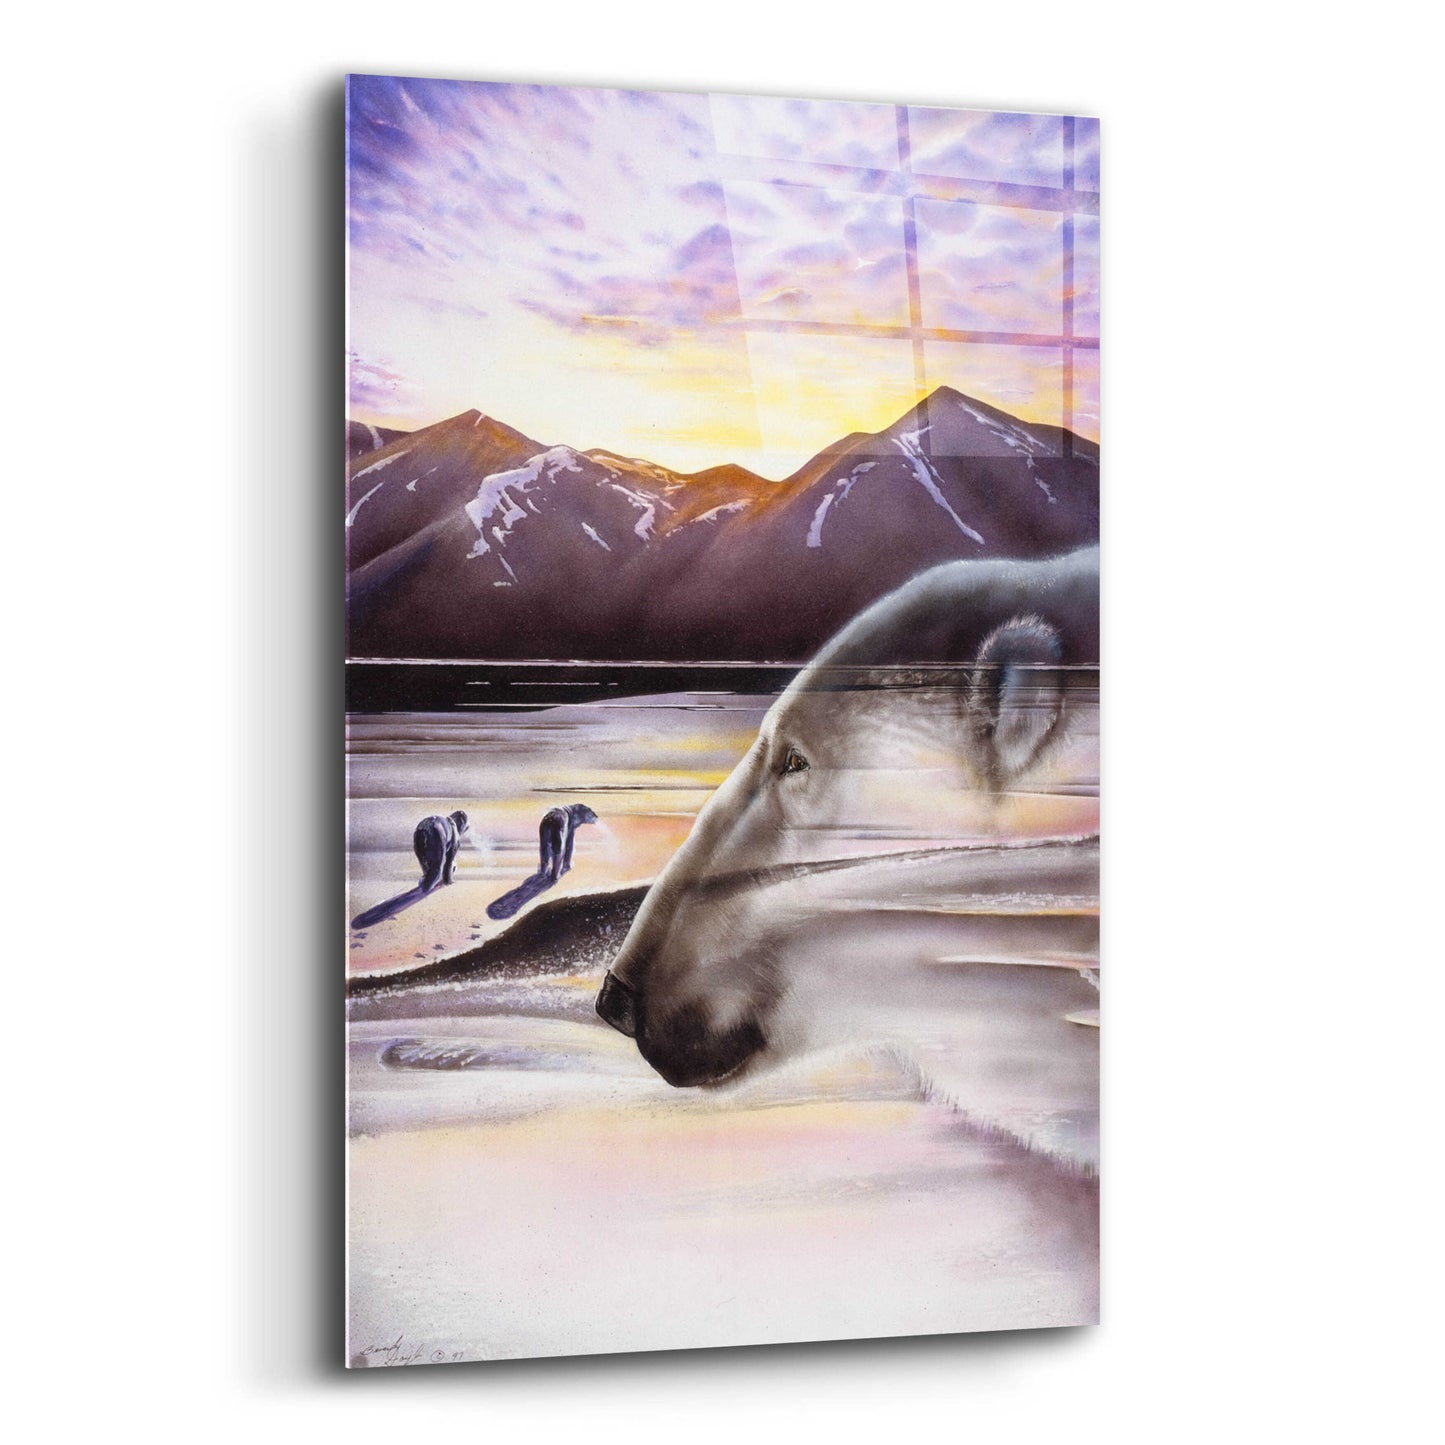 Epic Art 'Polar Bears' by Beverly Doyle, Acrylic Glass Wall Art,12x16